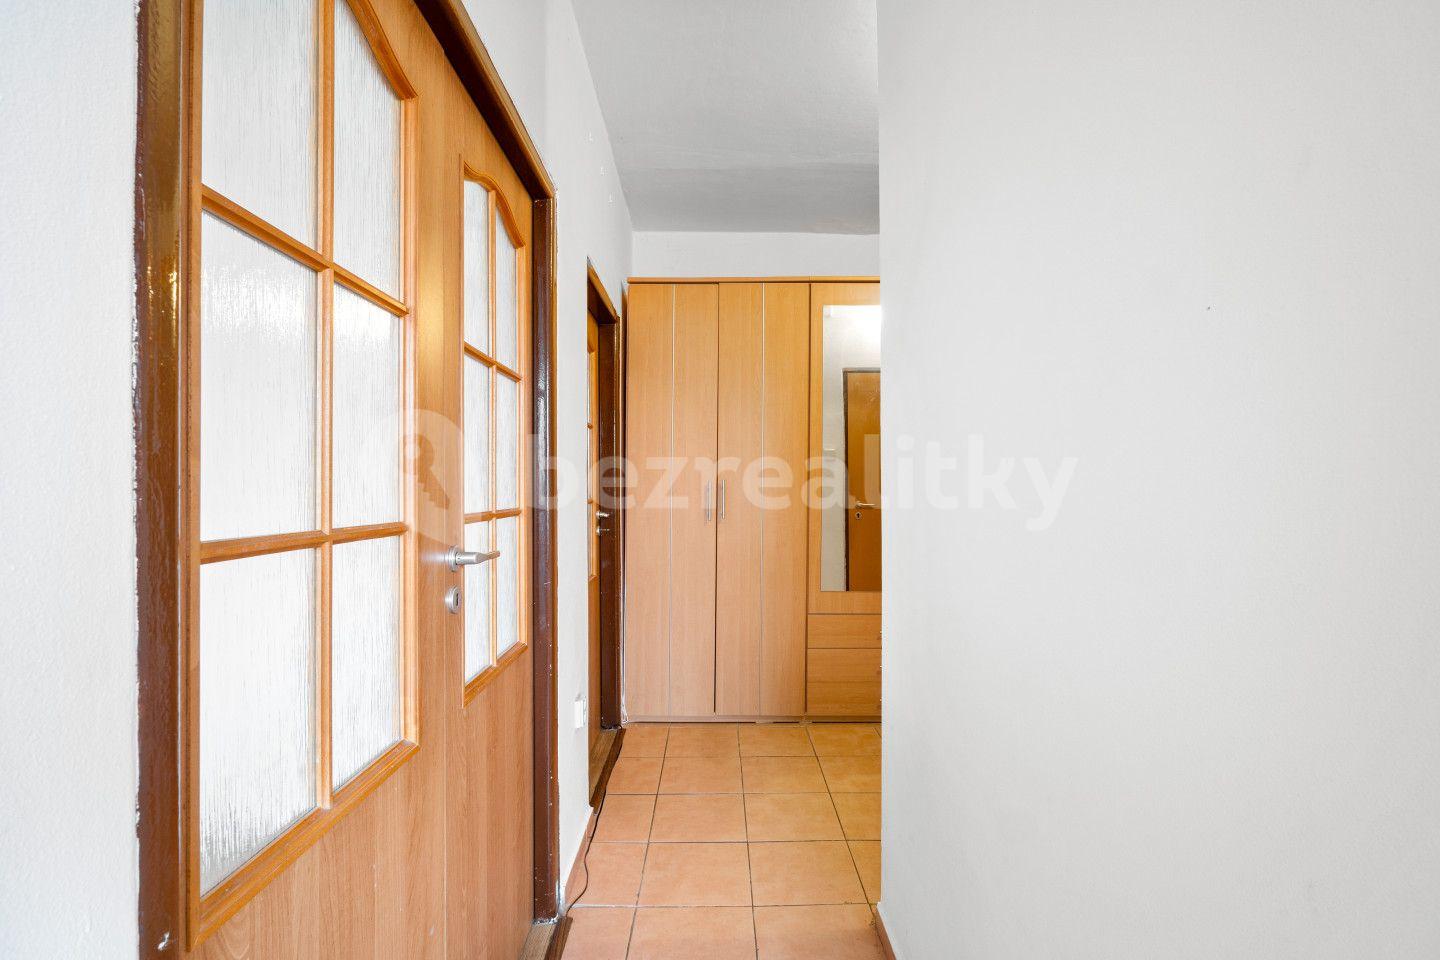 2 bedroom flat for sale, 52 m², Zahradnictví, Duchcov, Ústecký Region